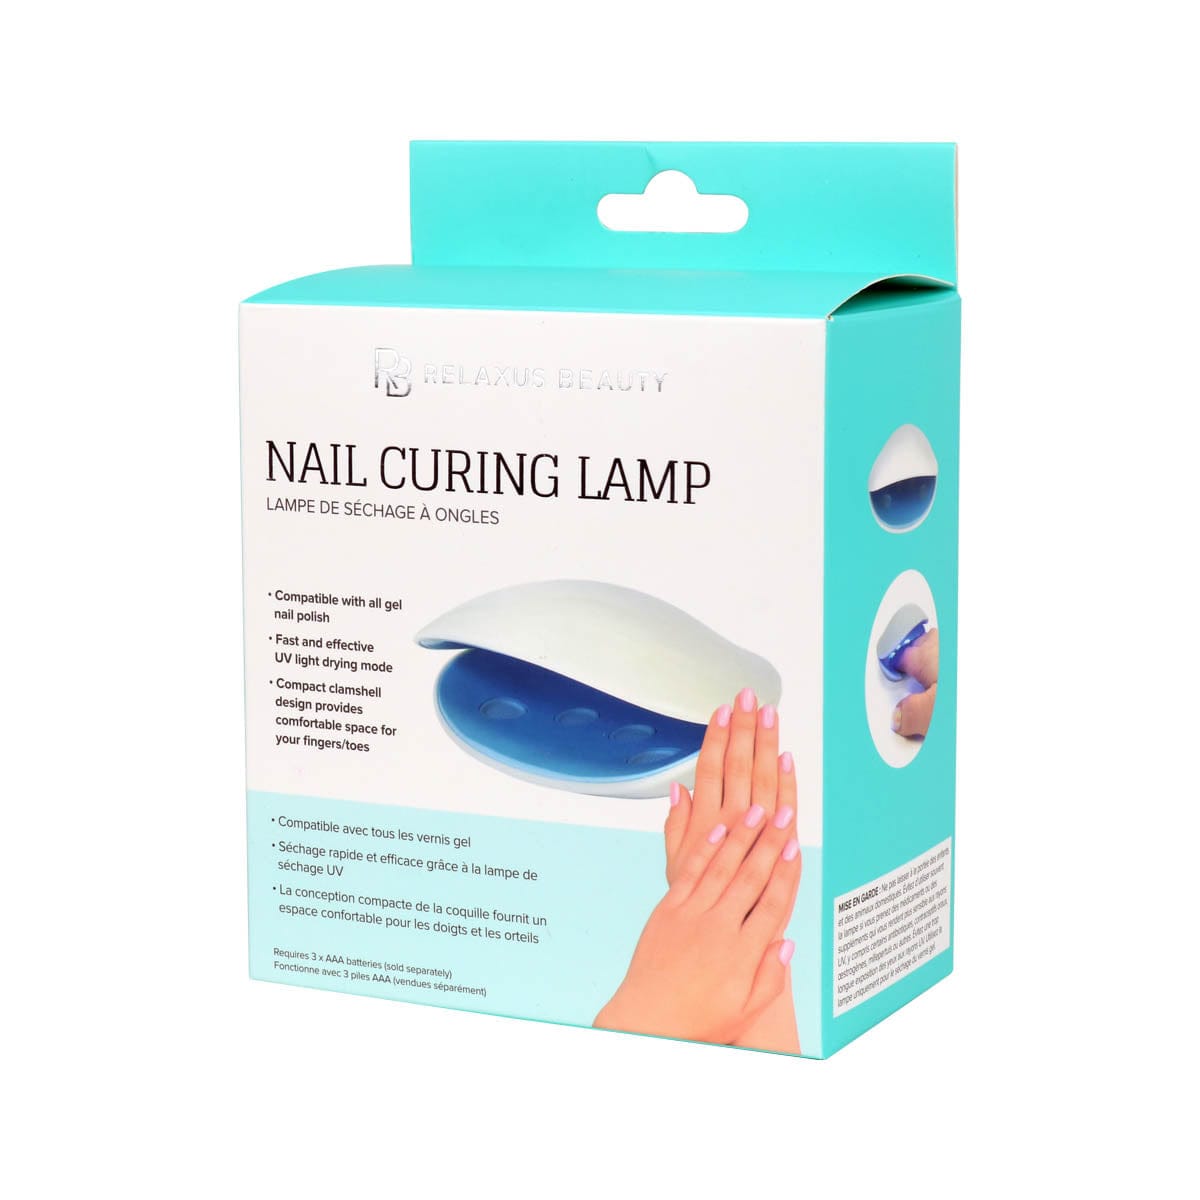 Nail Curing Lamp box